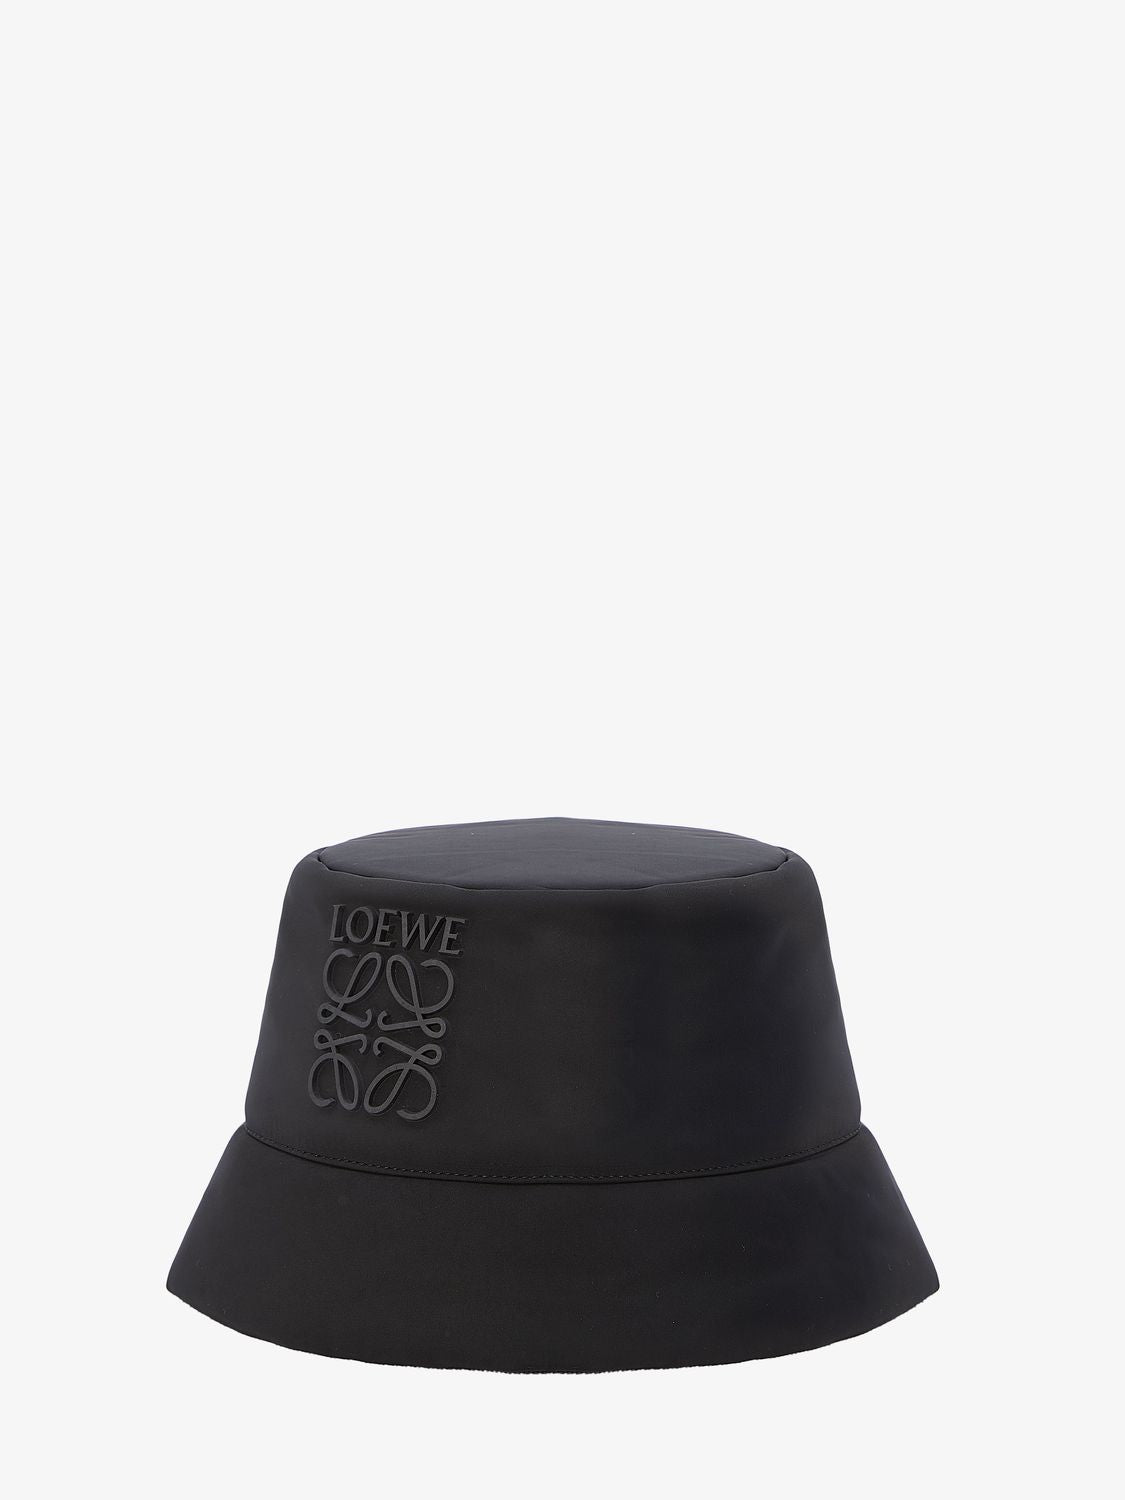 黑色尼龍泡沫桶帽 - 高端奢侈設計師的品牌和商標